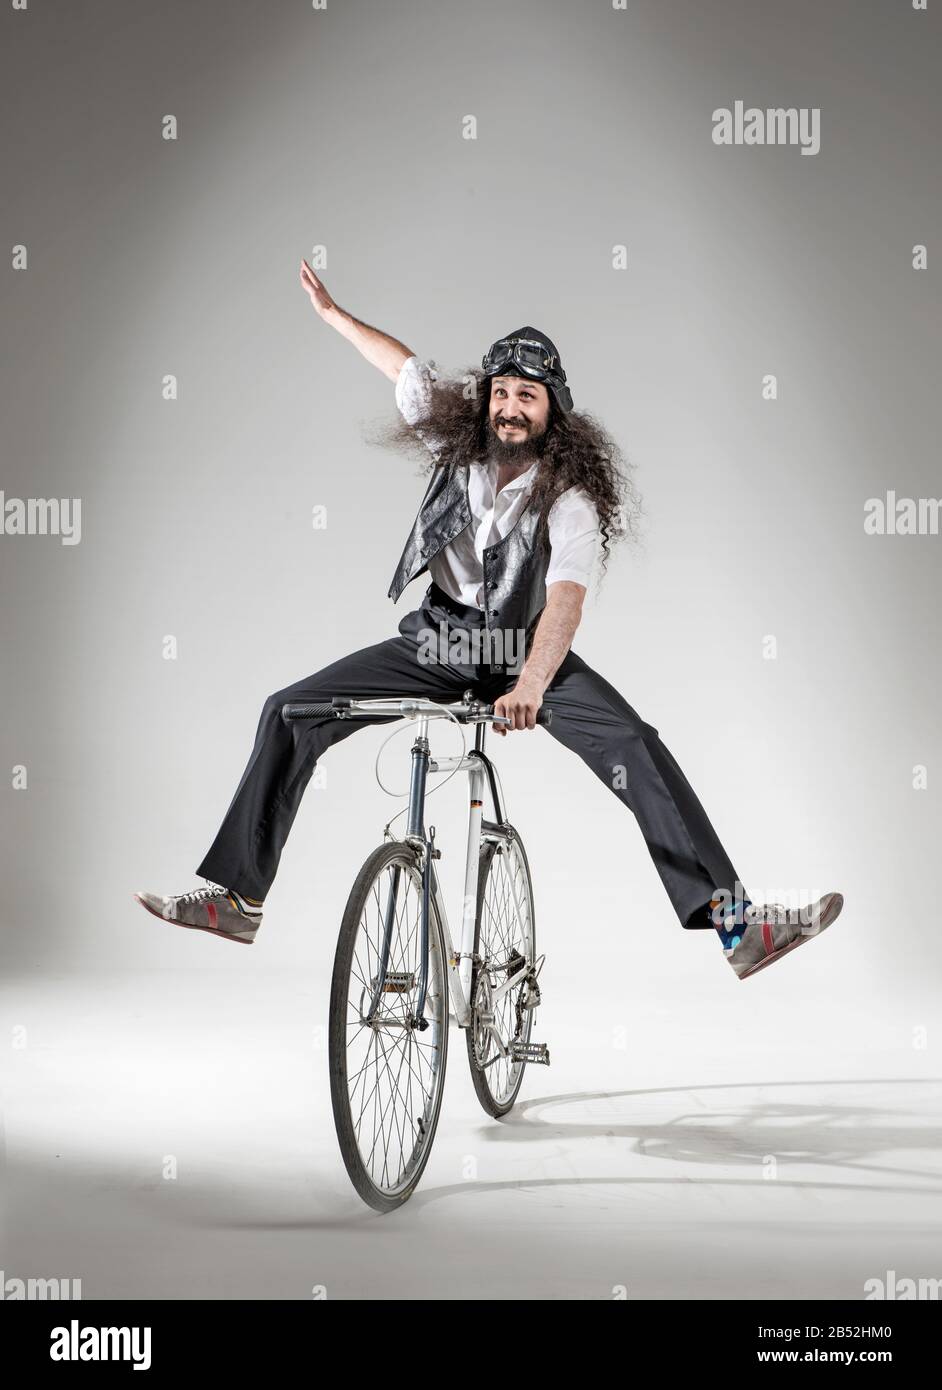 Portrait of a skinny geek riding a bike Stock Photo - Alamy